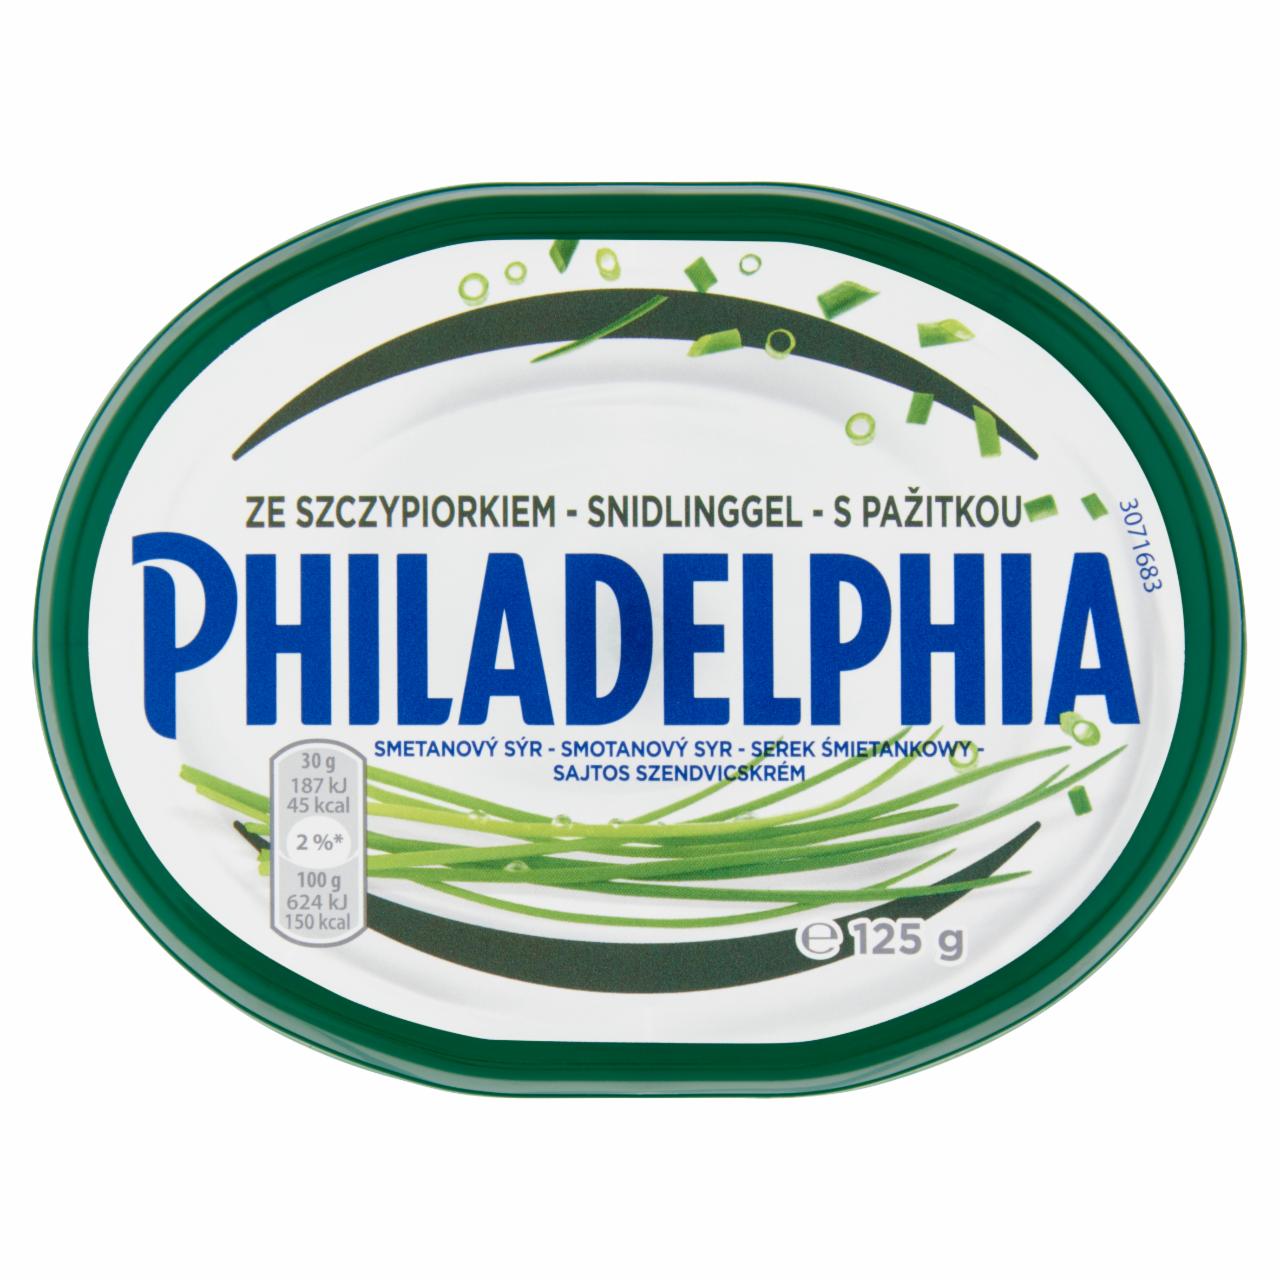 Képek - Philadelphia sajtos szendvicskrém snidlinggel 125 g